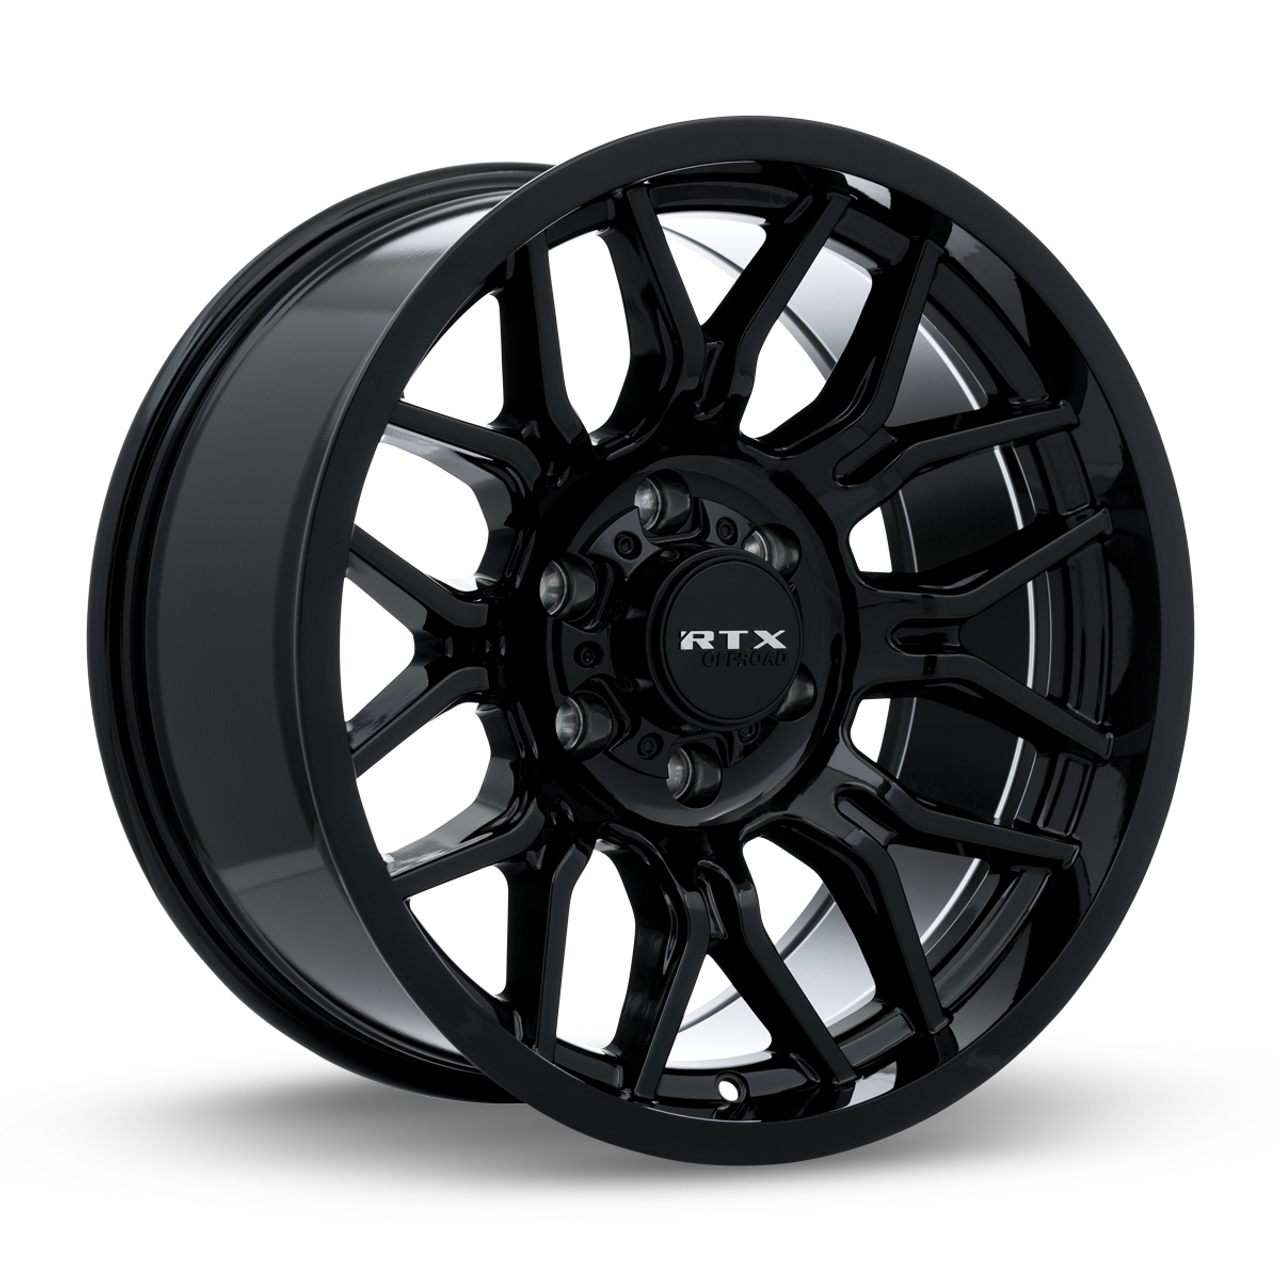 Set 4 20" RTX Claw Gloss Black Wheels 20x10 8x6.5 -18mm Lifted Truck Rims